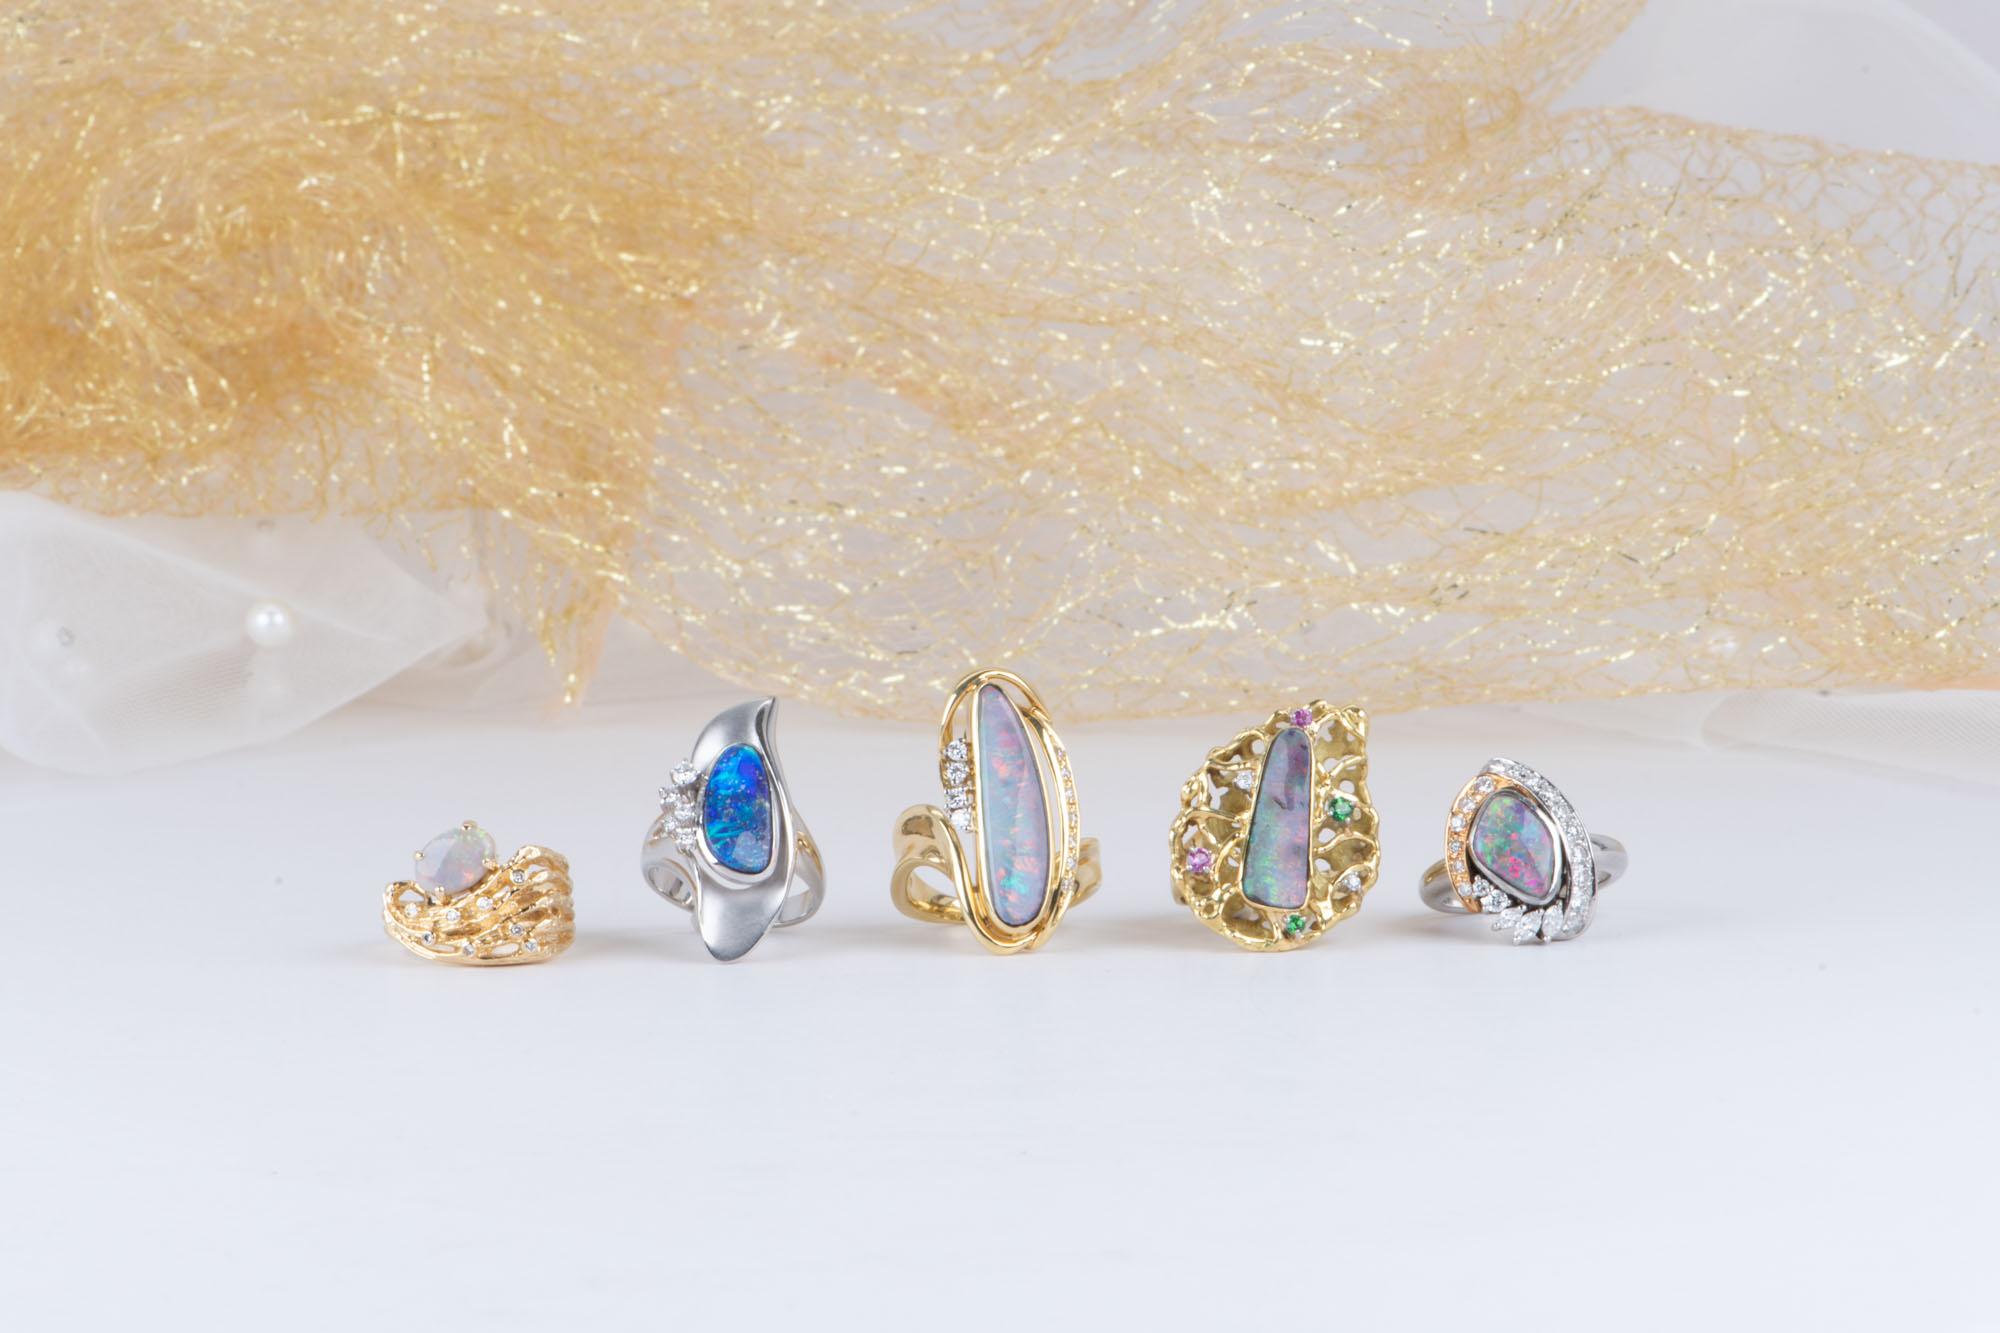 Solid Australian Opal Modernist Design 18K Gold Chunky Ring V1118 For Sale 1